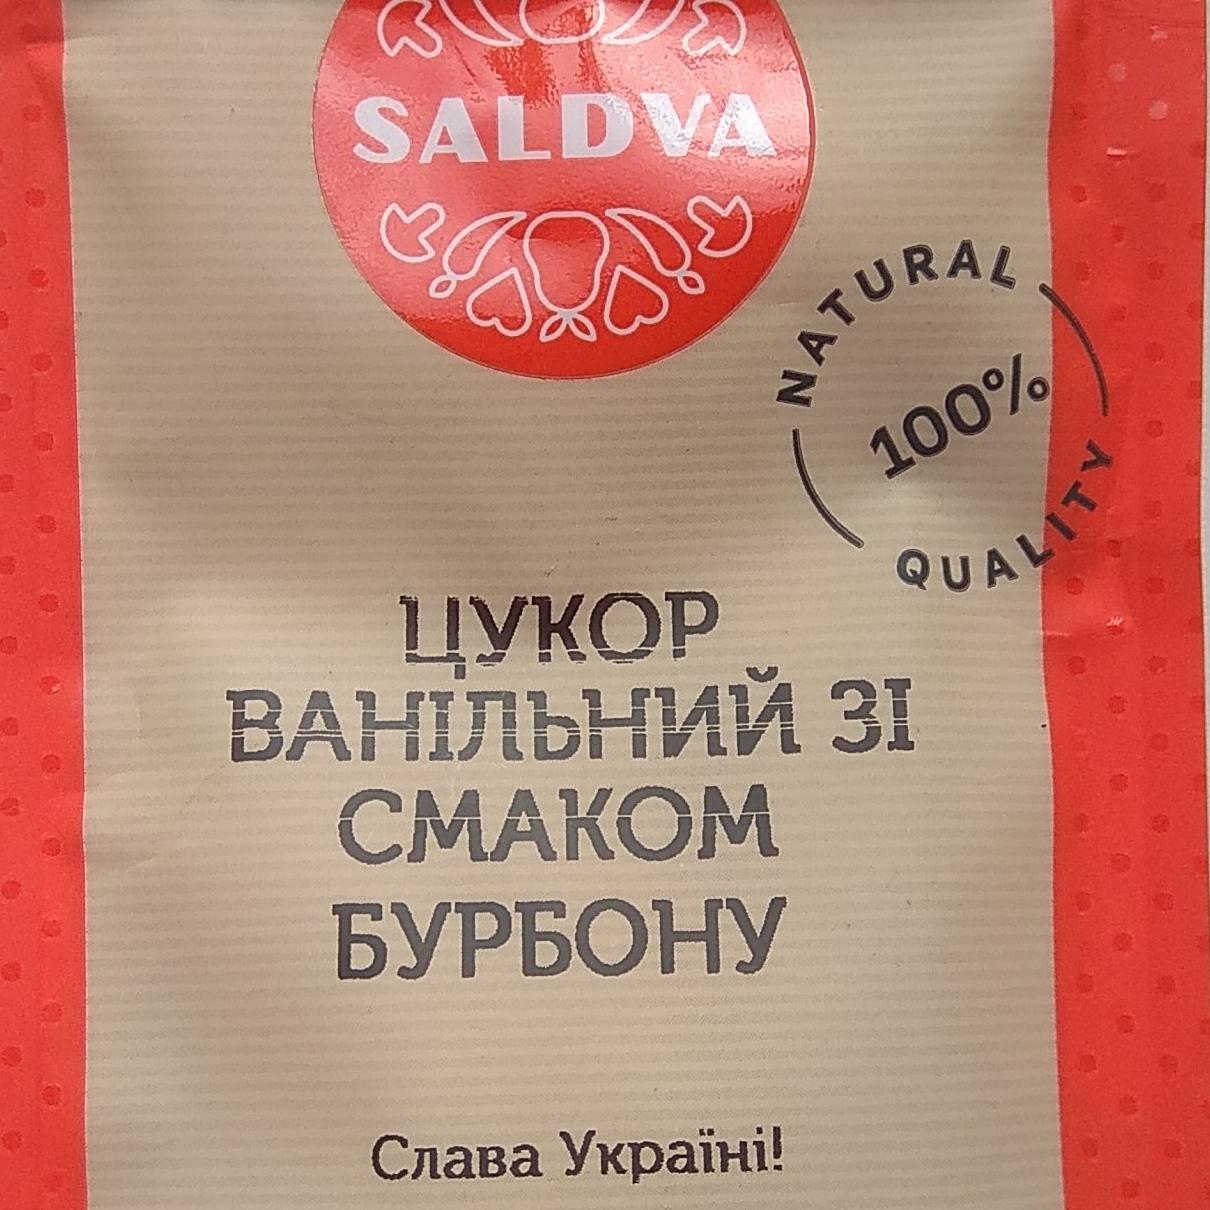 Фото - Сахар ванильный со вкусом бурбона Saldva